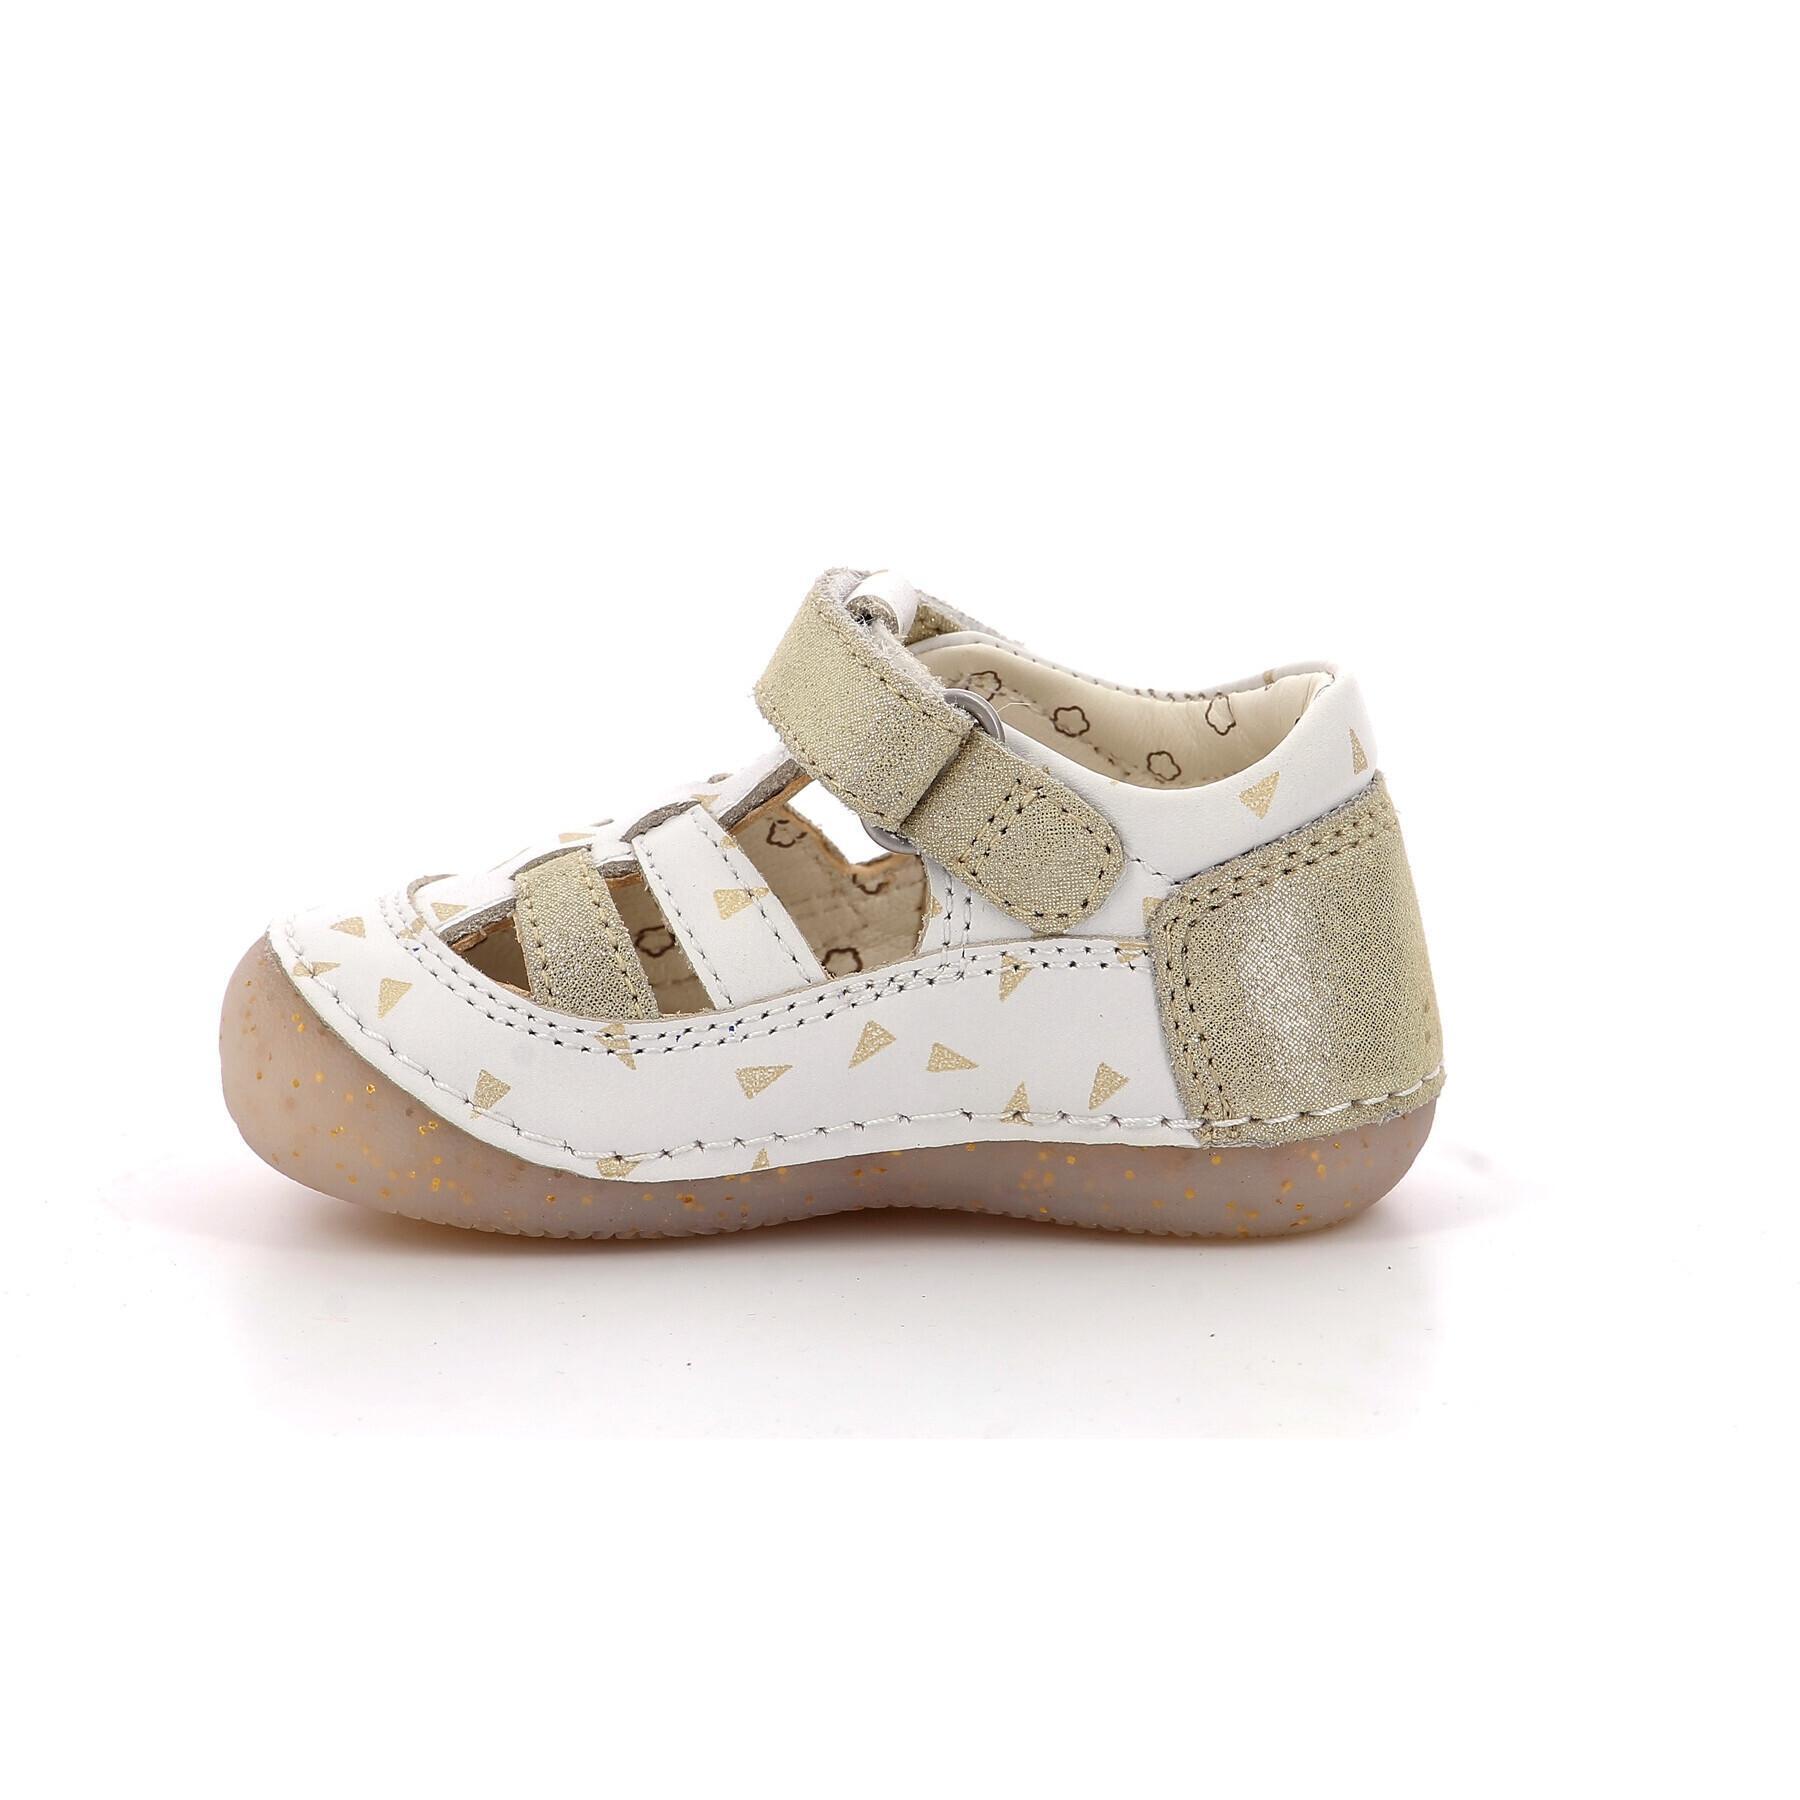 Sandalen voor babymeisjes Kickers Sushy